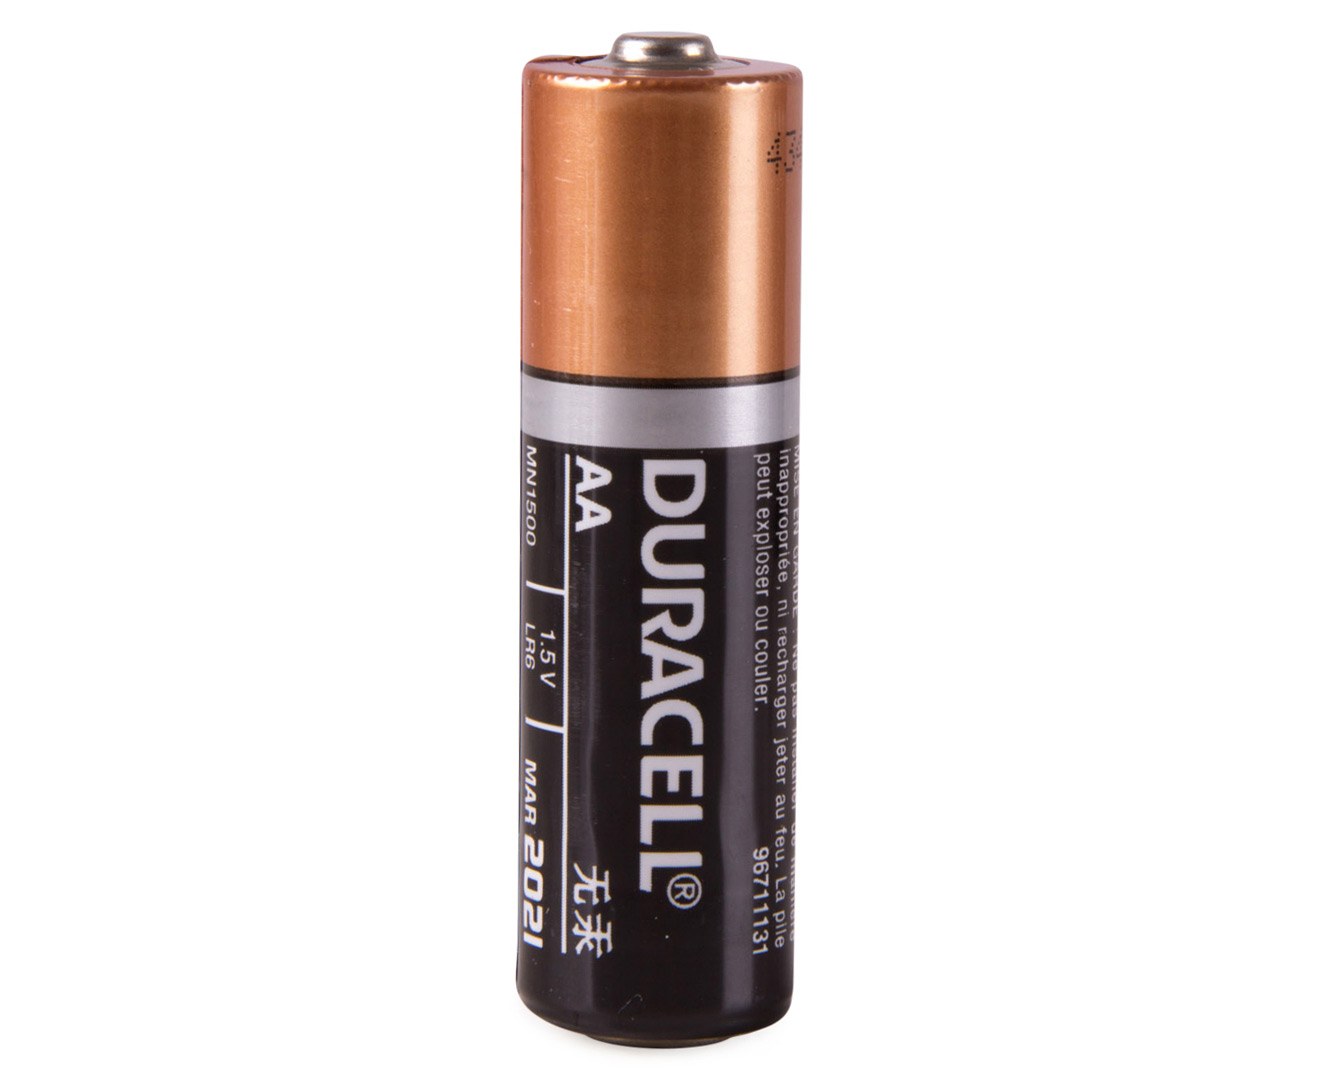 Aaa battery. Батарейка Duracell AA. Дурасель duraseal батарейки. Батарейка Duracell lr06 up. Батарейки Duracell lr6 AA алкалиновые (щелочные) пальчиковые.